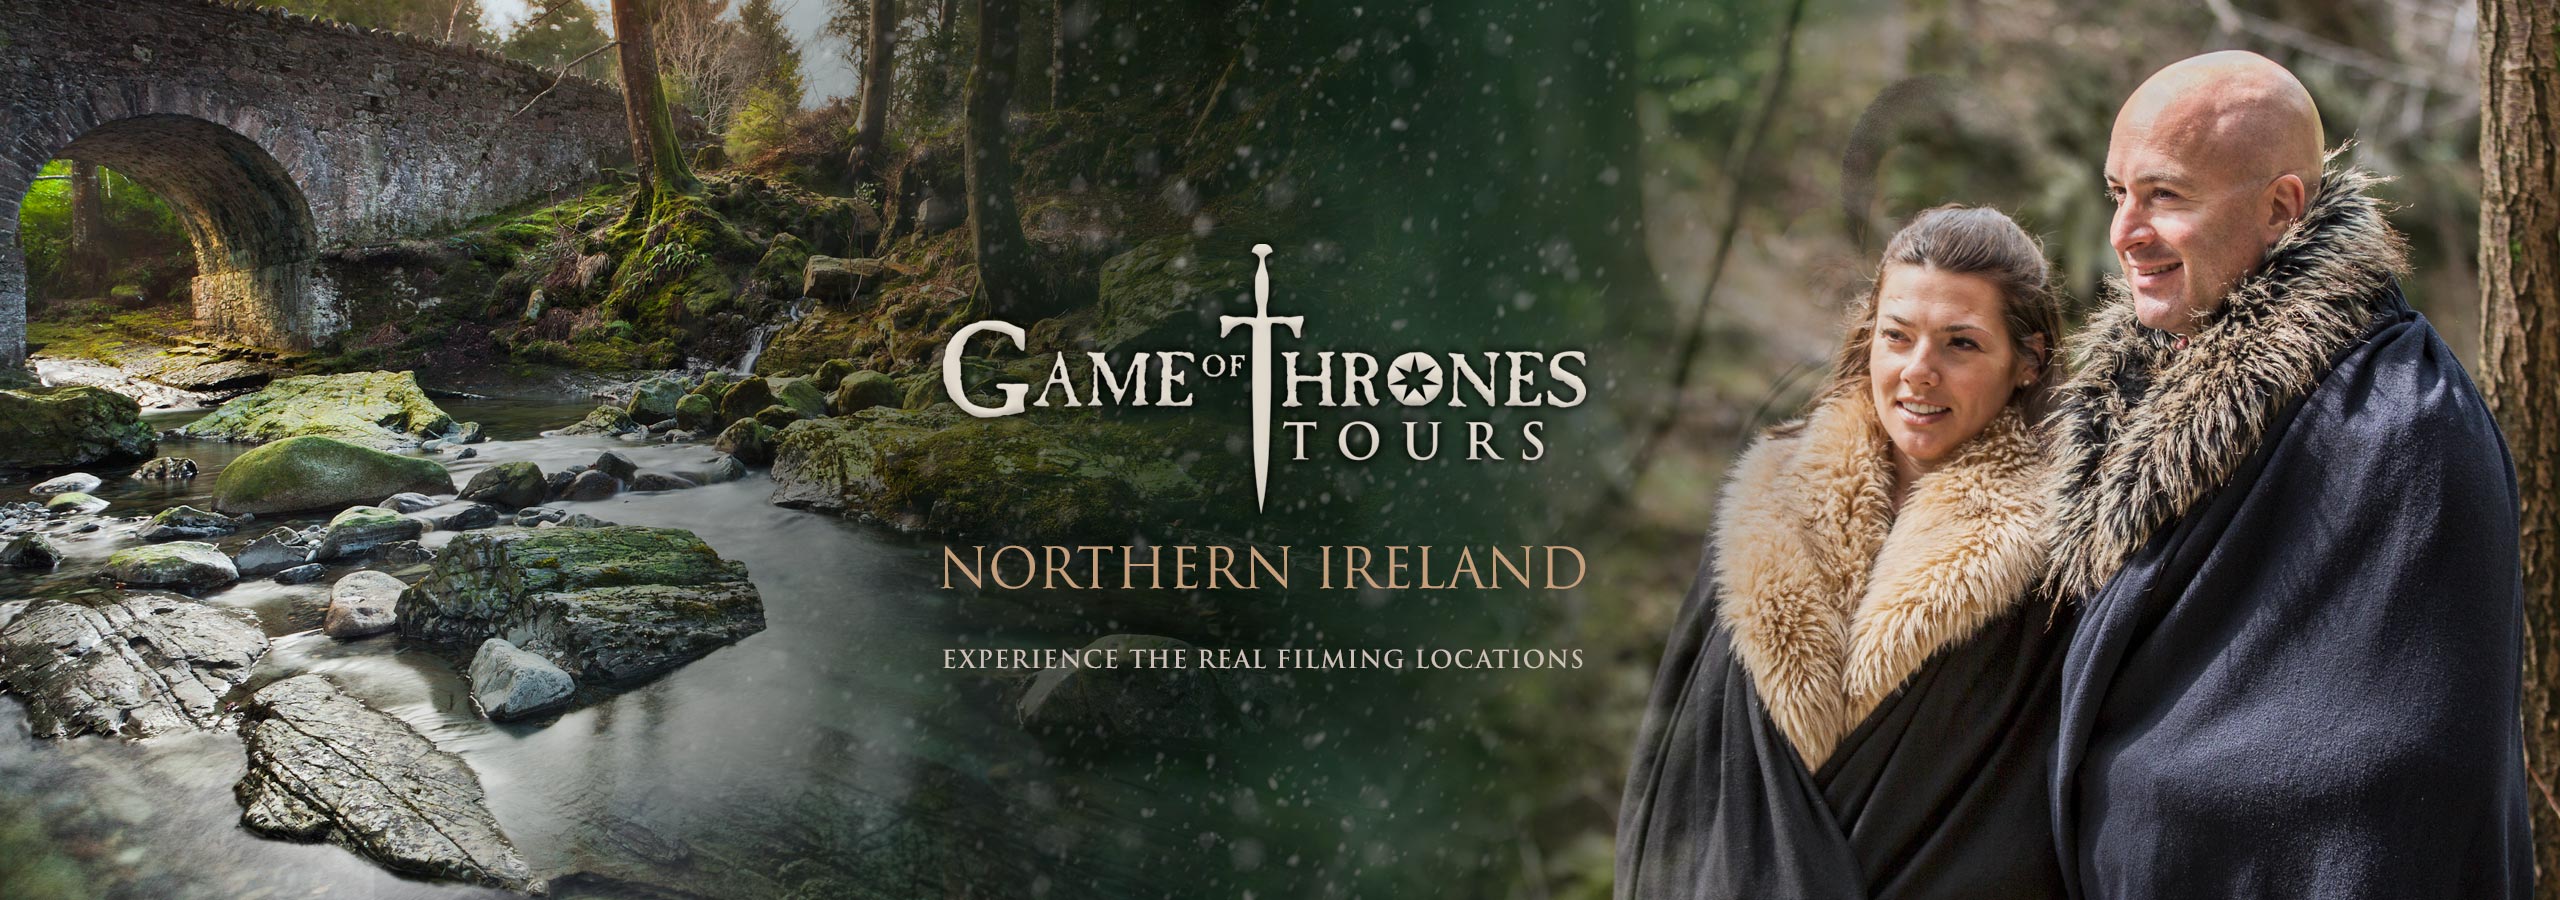 northern ireland got tour